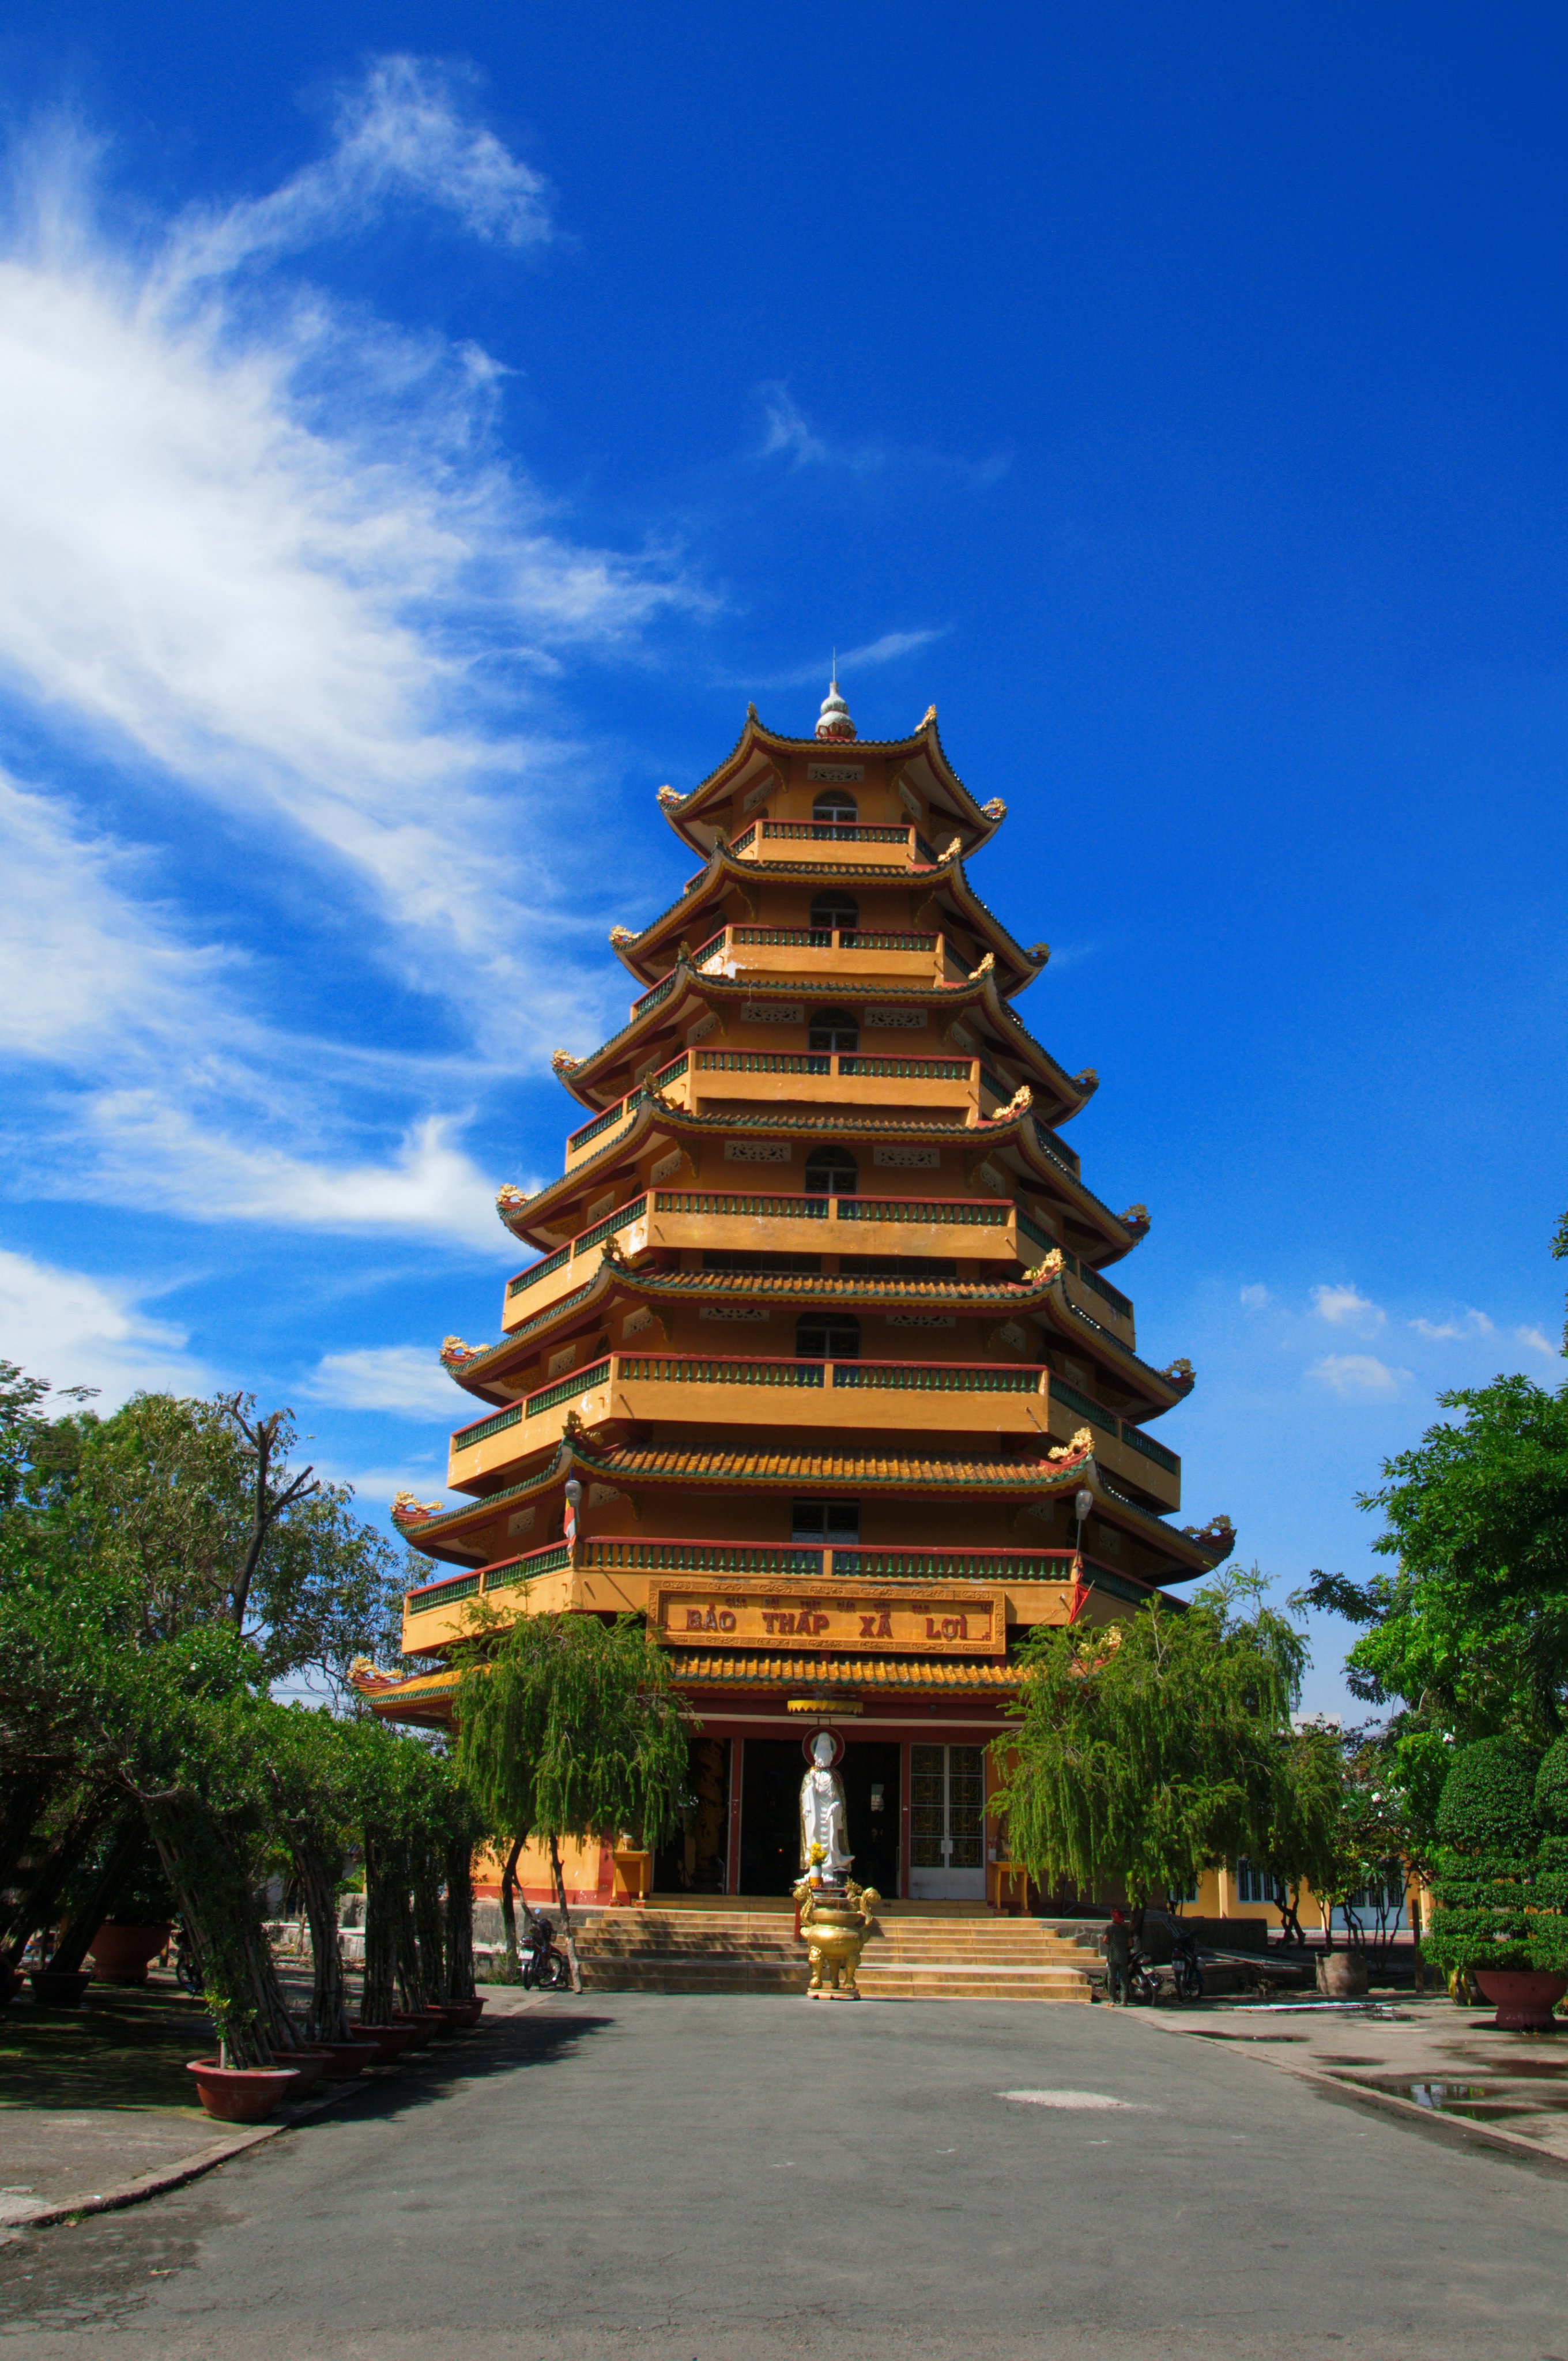 Bảo tháp Xá Lợi, chùa Giác Lâm. Ảnh: Ngô Viễn An.